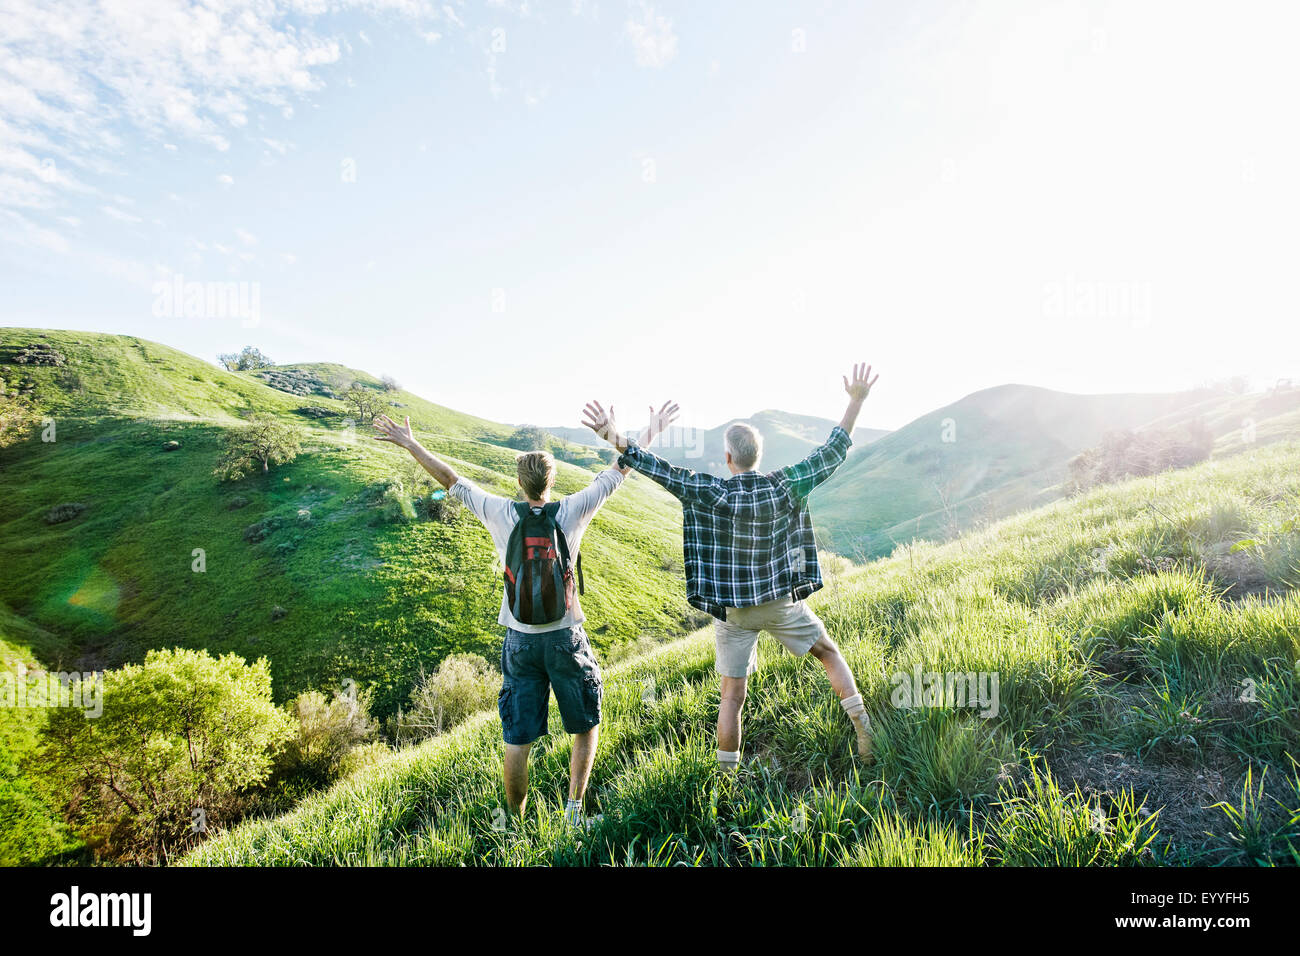 Portrait père et fils cheering on grassy hillside Banque D'Images